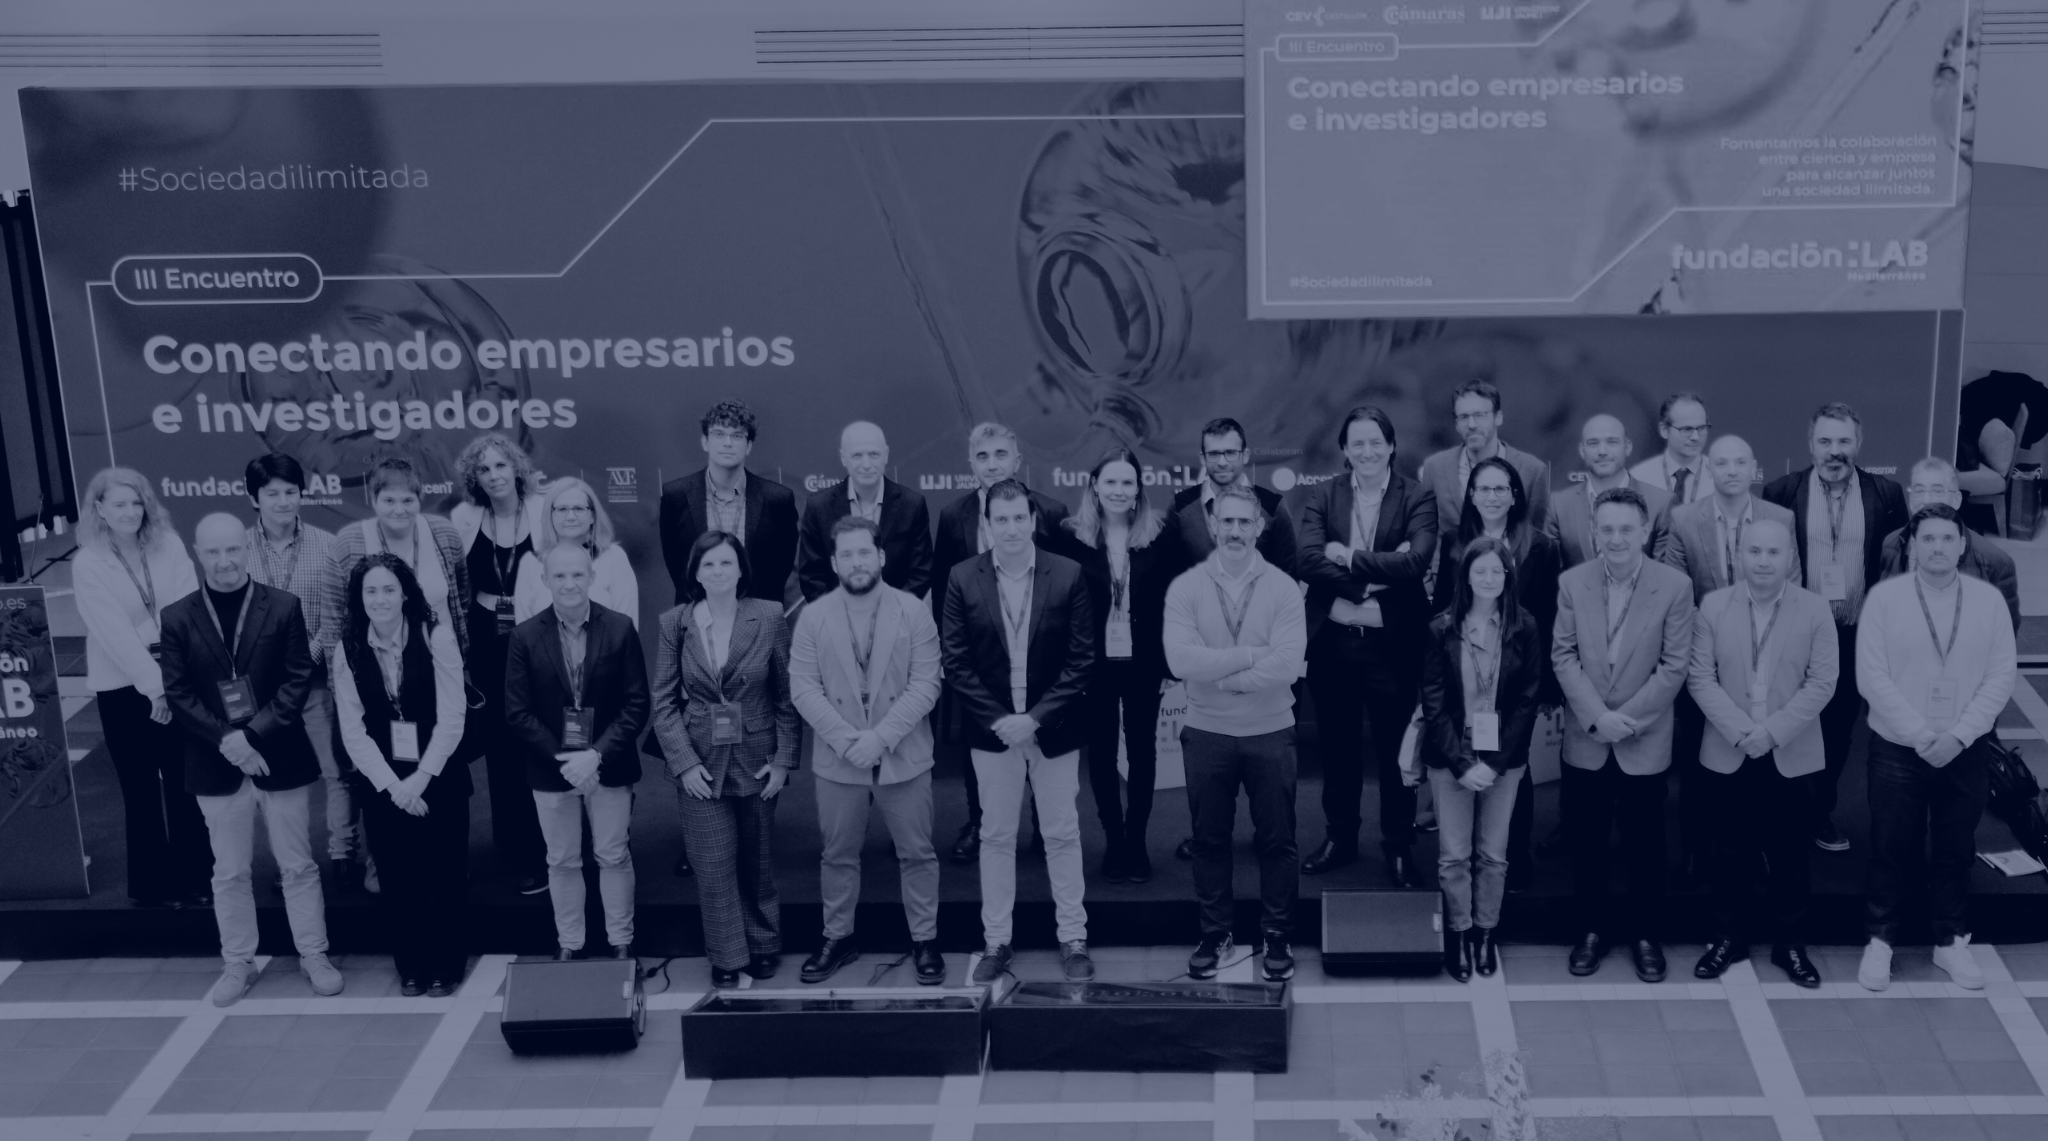 Galería – Fundación LAB Mediterráneo III Encuentro conectando empresarios e investigadores